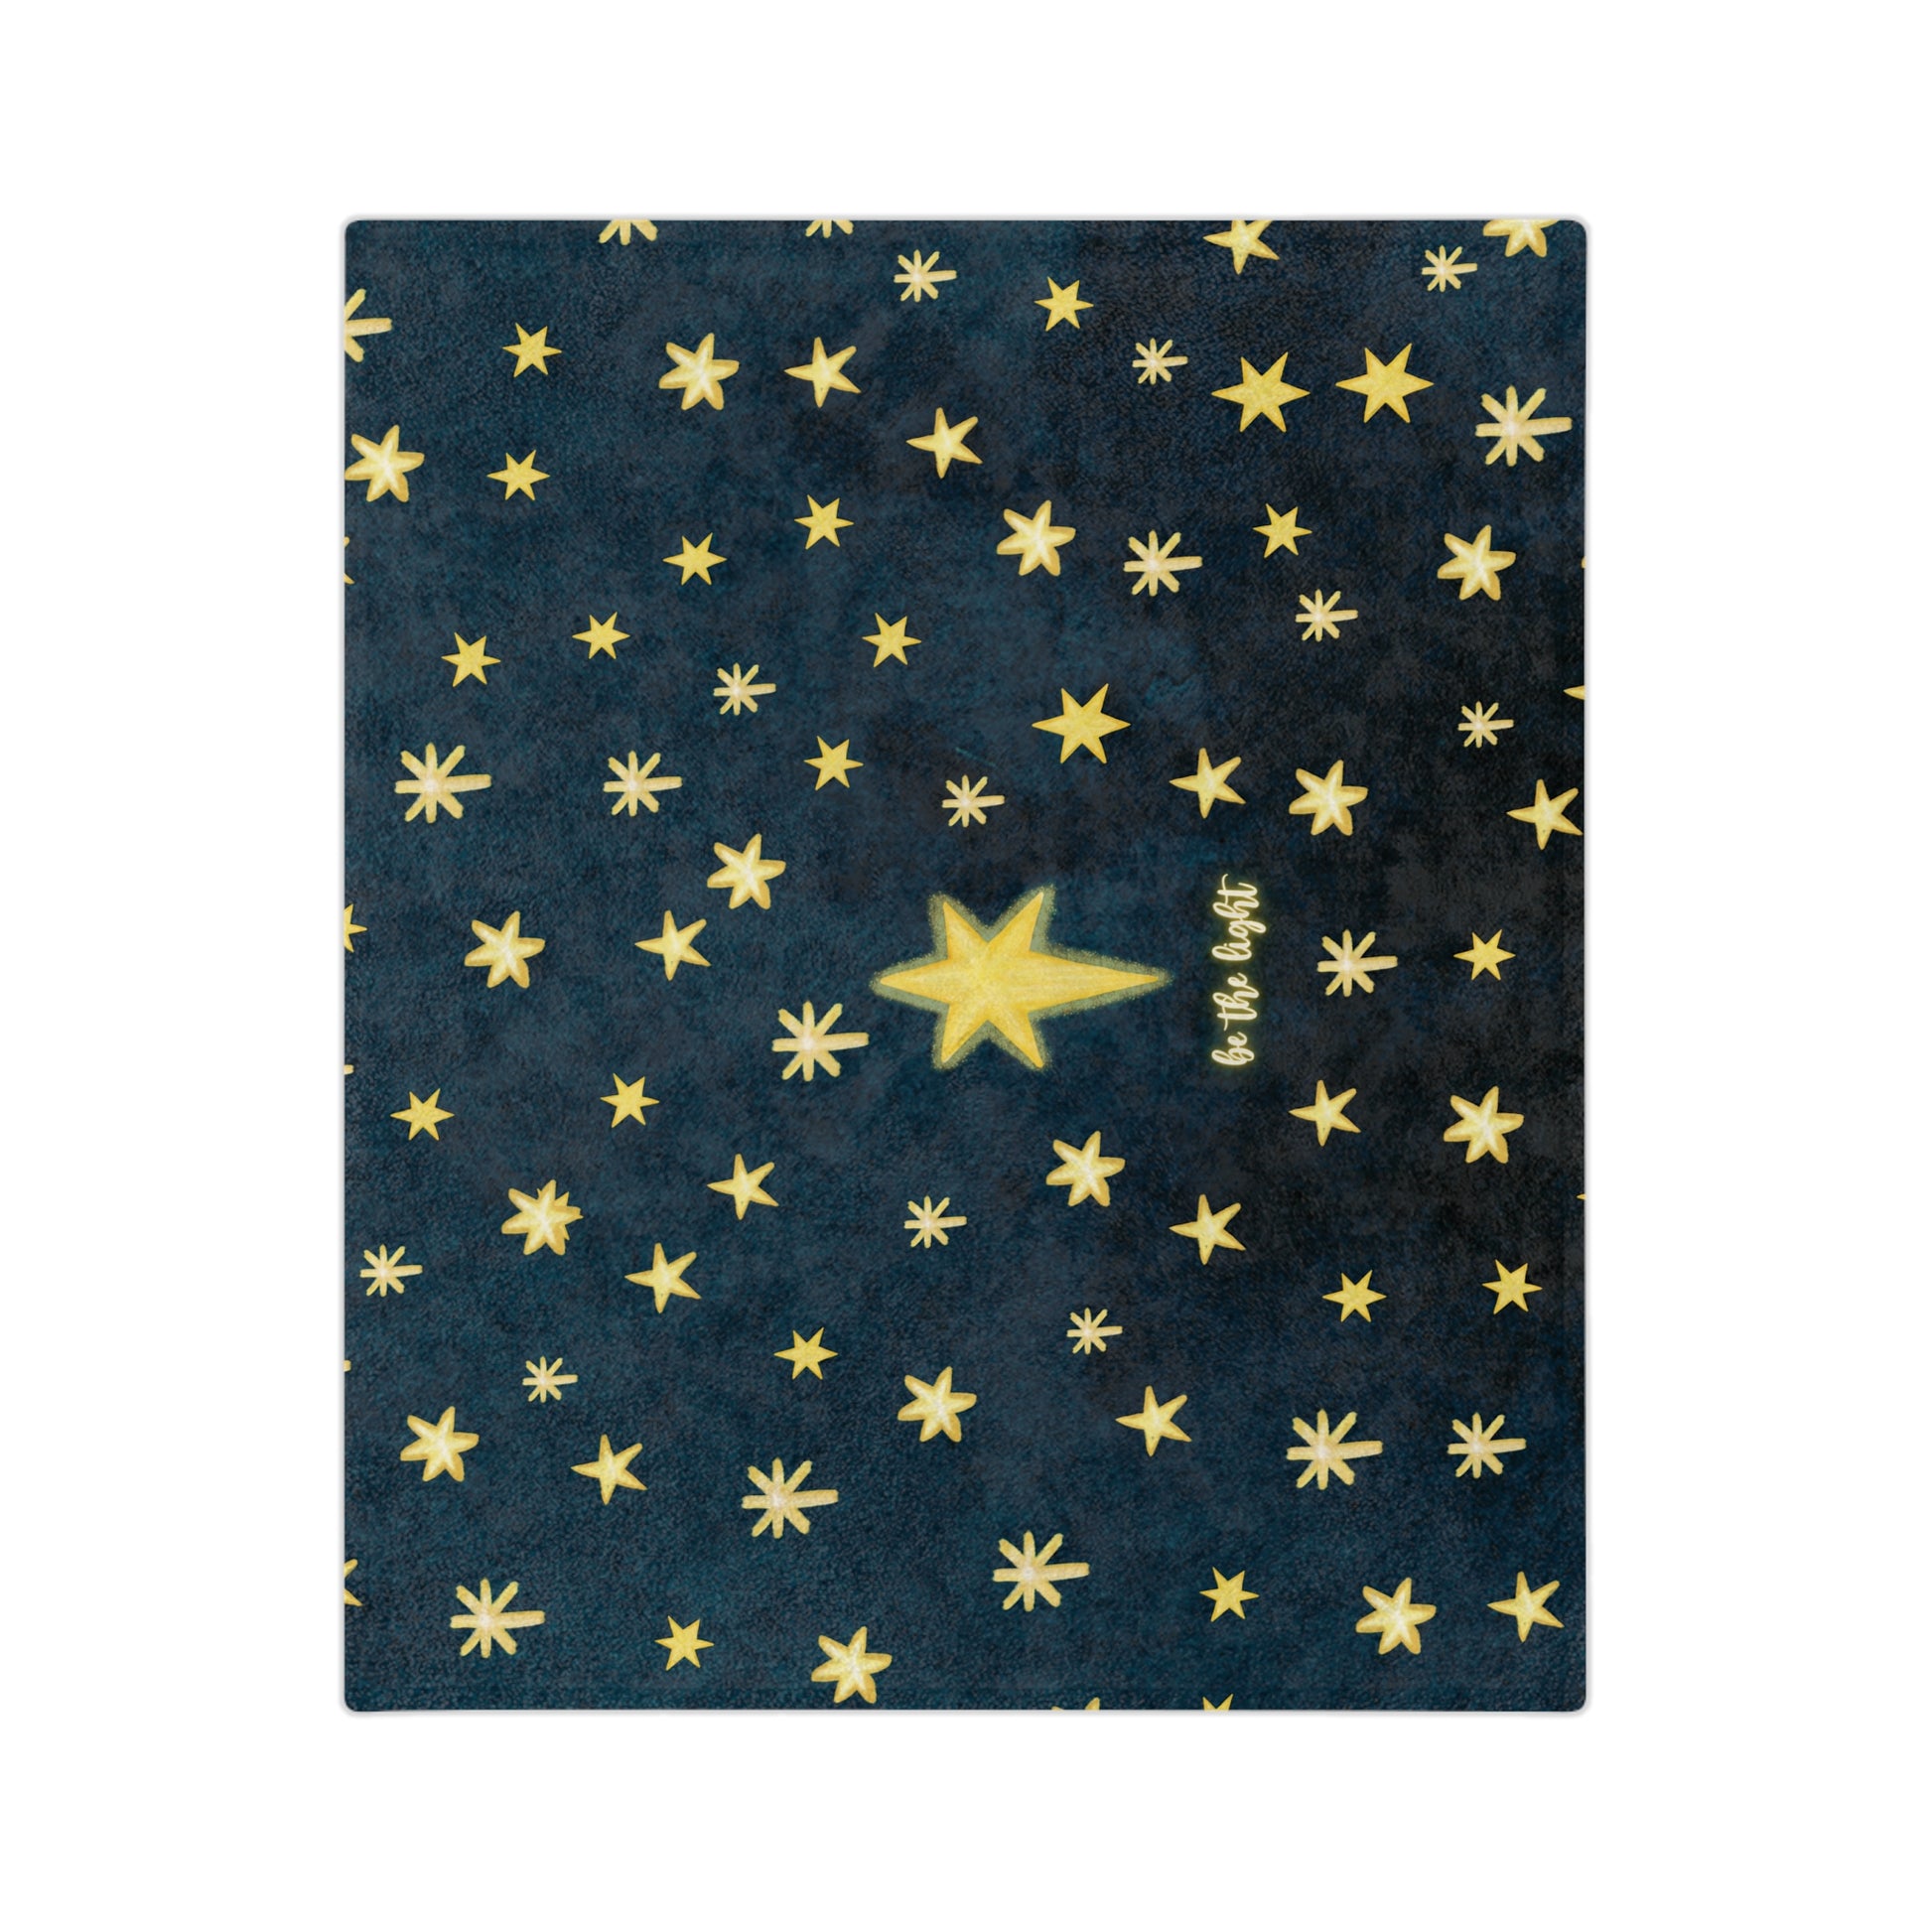 Starry Sky Blanket - Friends of the Faith